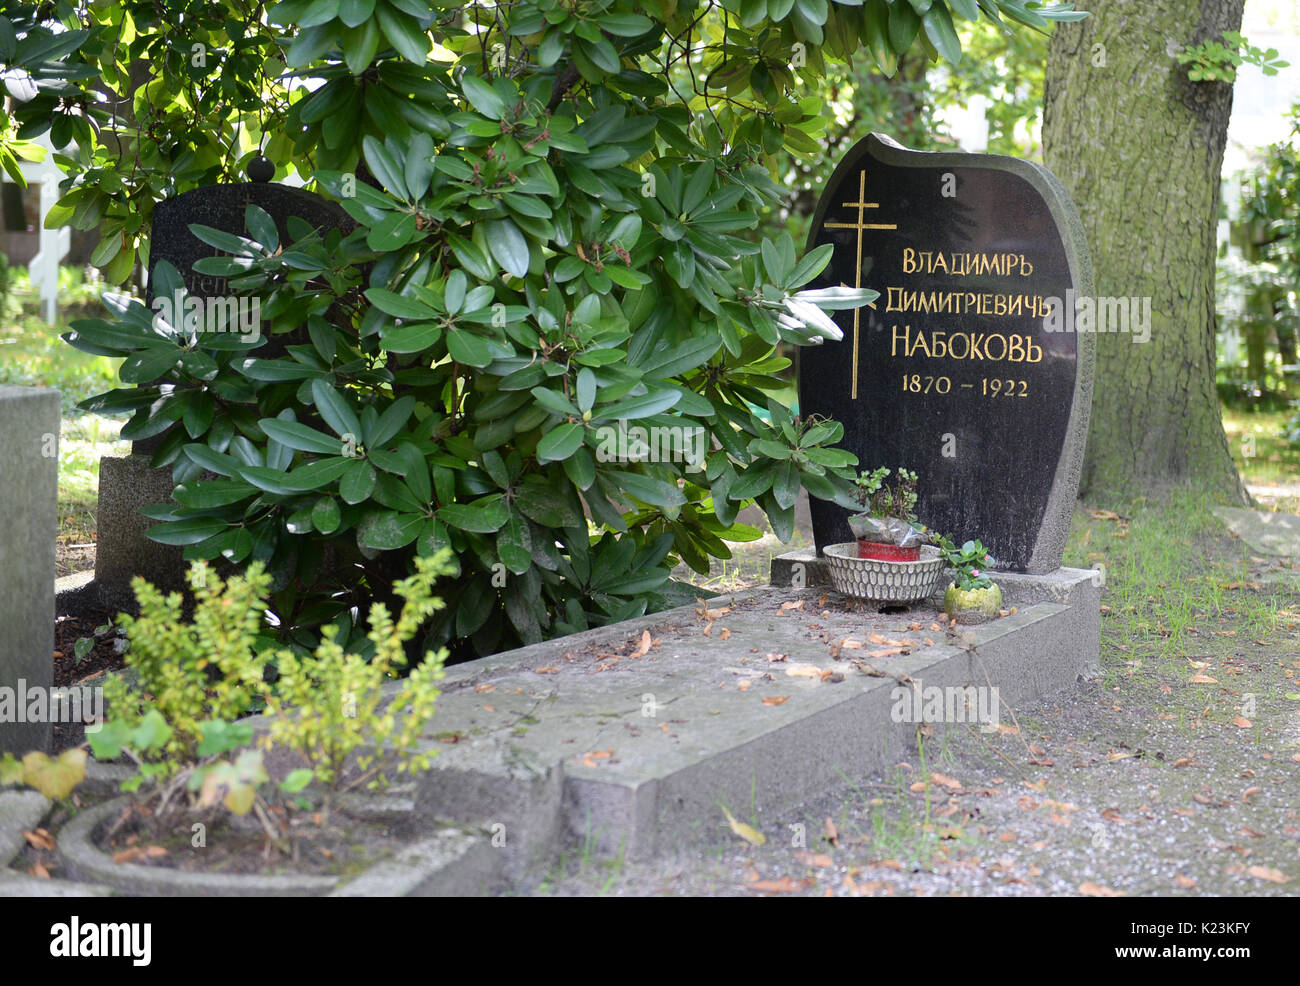 Immagine dell'oggetto contrassegnato per la rimozione definitiva di D. Vladimir Nabokov, padre dello scrittore Vladimir Nabokov ("Lolita"), prese nel cimitero russo di Berlino in Germania, 114, Agosto 2017. La morte del padre è stata l occasione per il figlio di trasferirsi a Berlino nel 1922. Nabokov ha guadagnato il riconoscimento in tutto il mondo con il suo romanzo, "Lolita', la base di cui Nabokov prevista a Berlino. L'autore non amano la città. La sua media di descrizioni di Berlino, tuttavia, incitare interesse tra i turisti. Foto: Christina Peters/dpa Foto Stock